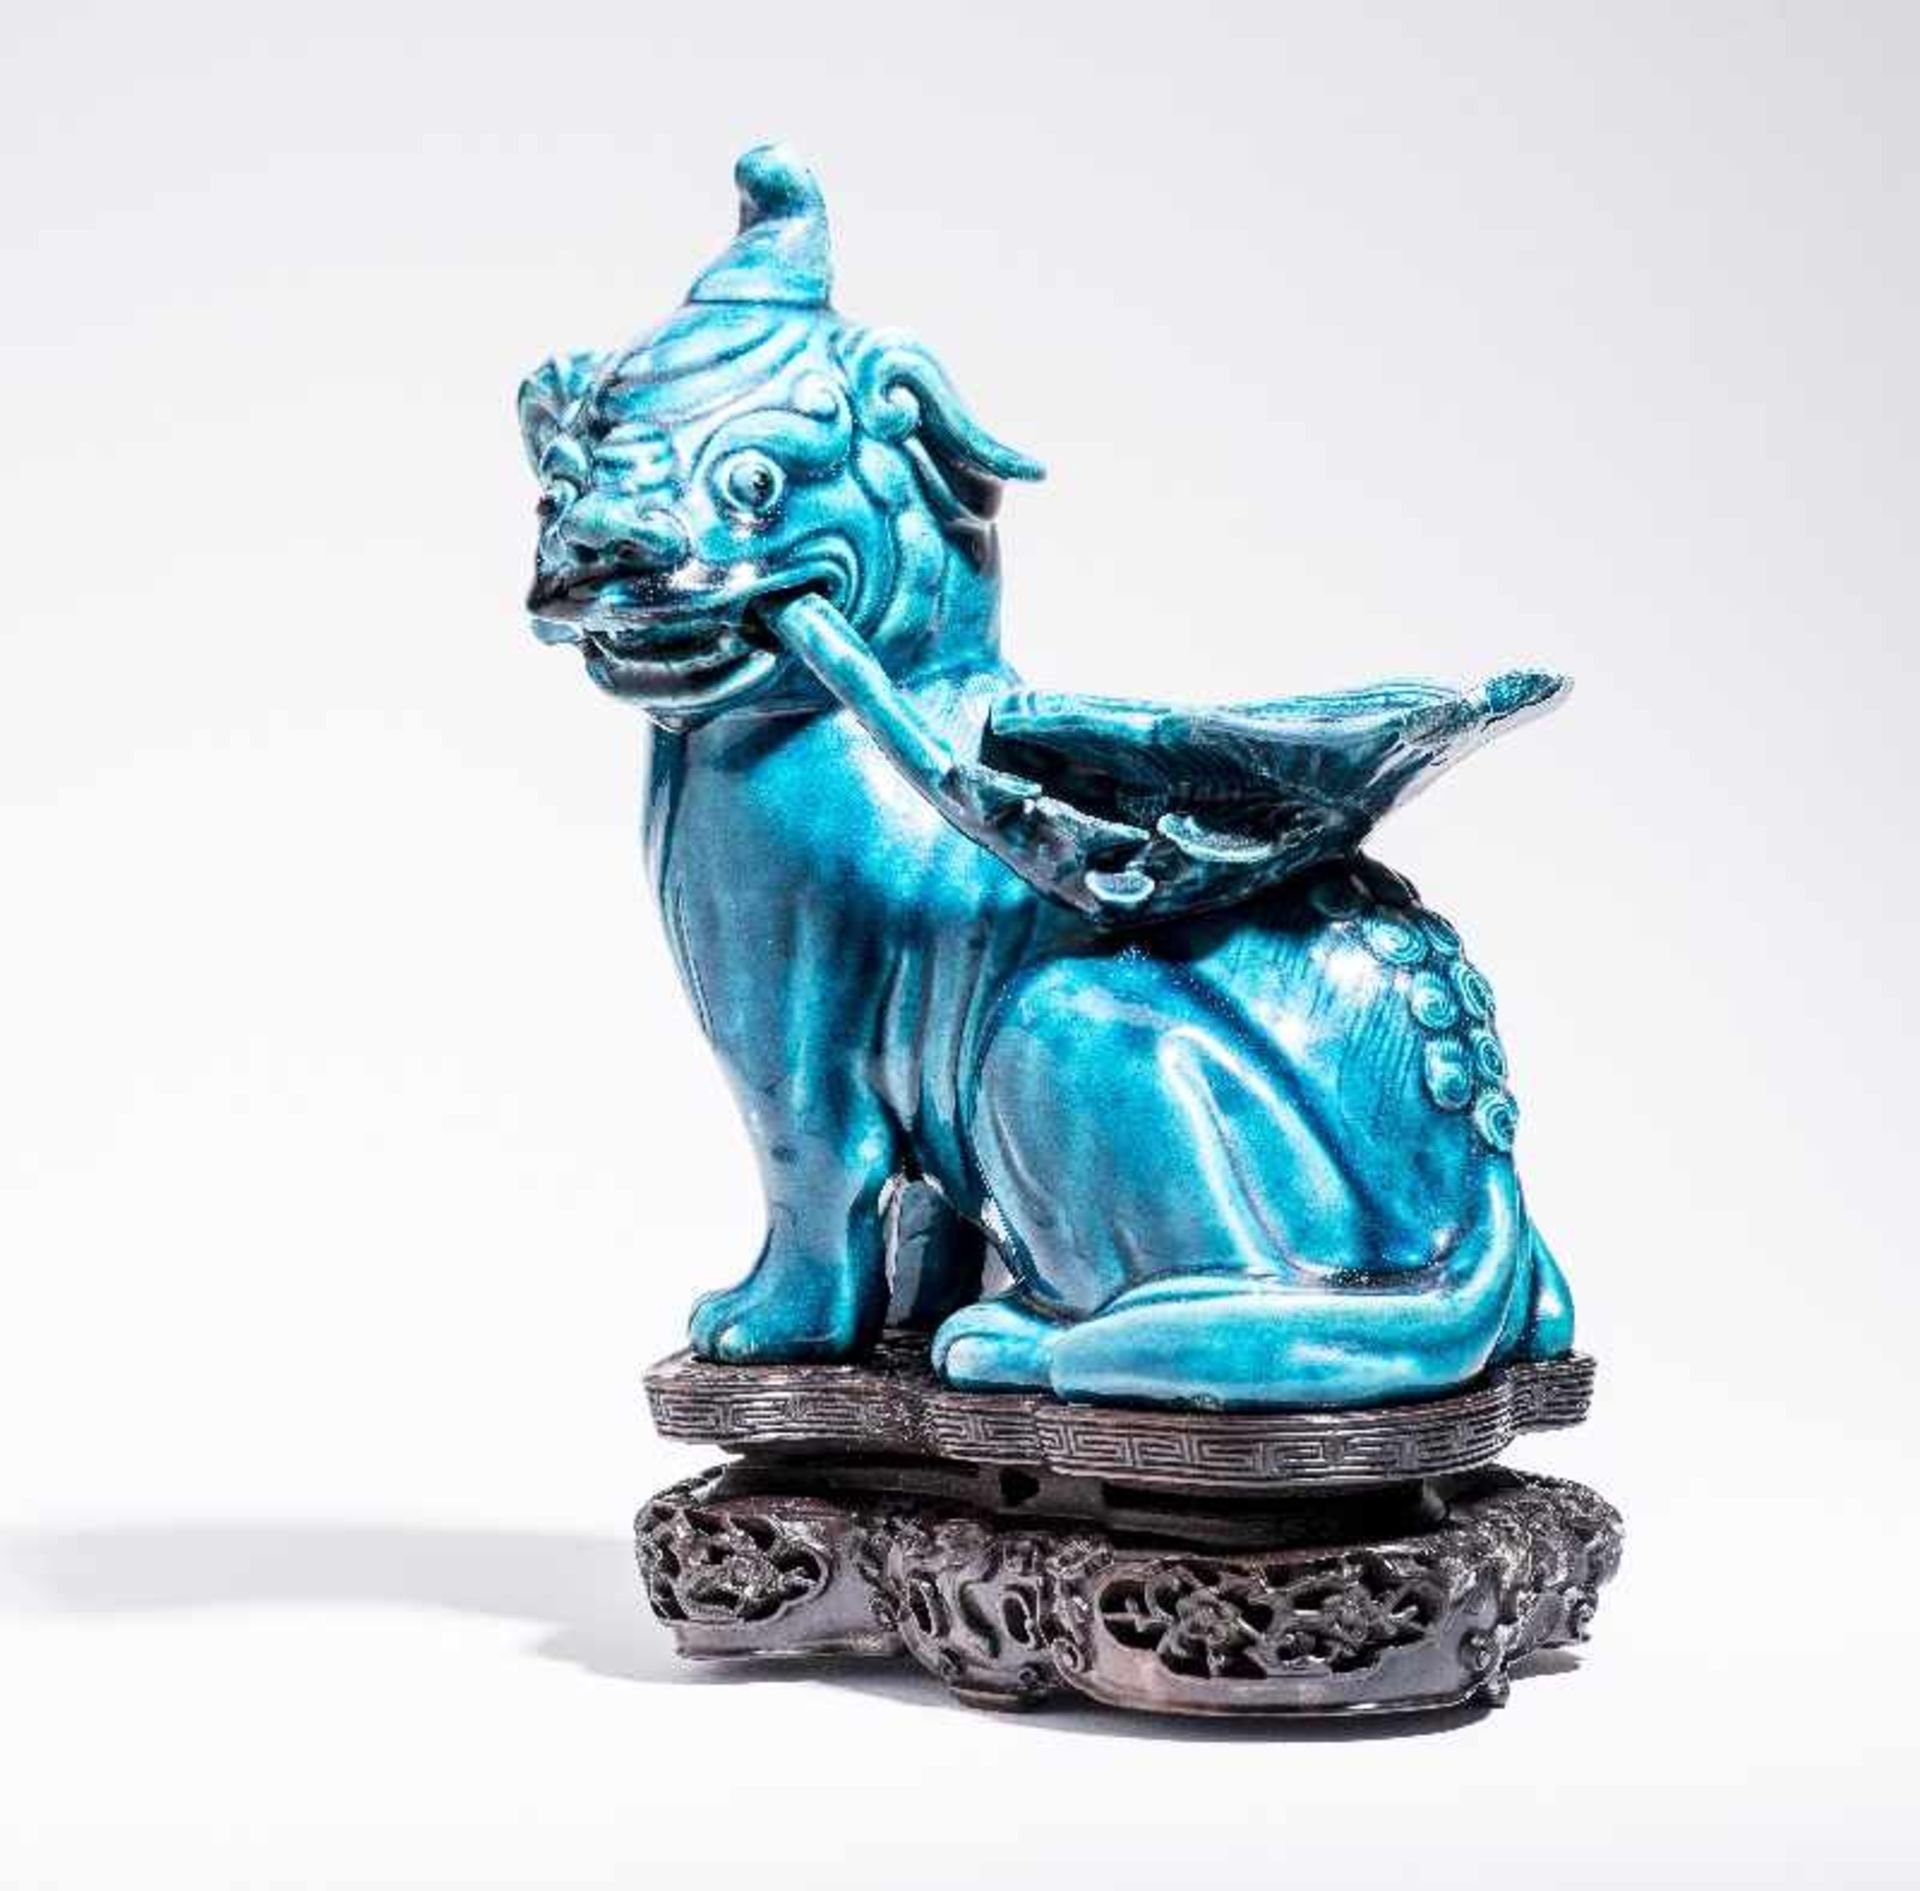 SITZENDES EINHORNPorzellan. China, Qing-Dynastie, 18. Jh. An dieser Porzellanskulptur des - Bild 6 aus 7